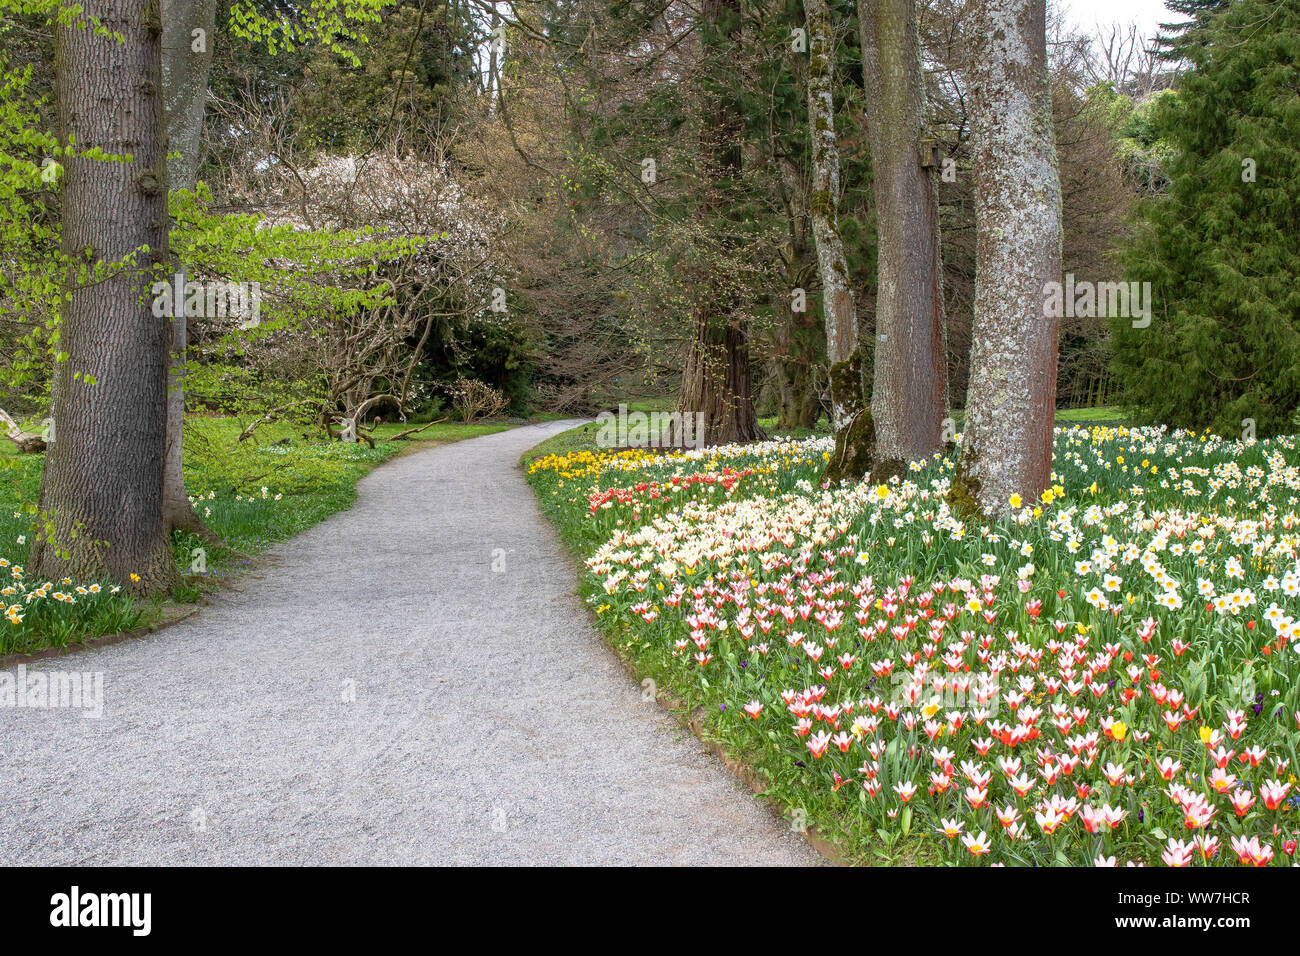 Deutschland, Baden-Württemberg, Bodensee, Bodensee, Insel Mainau, blühenden Park auf der Mainau Blumeninsel im Bodensee Stockfoto